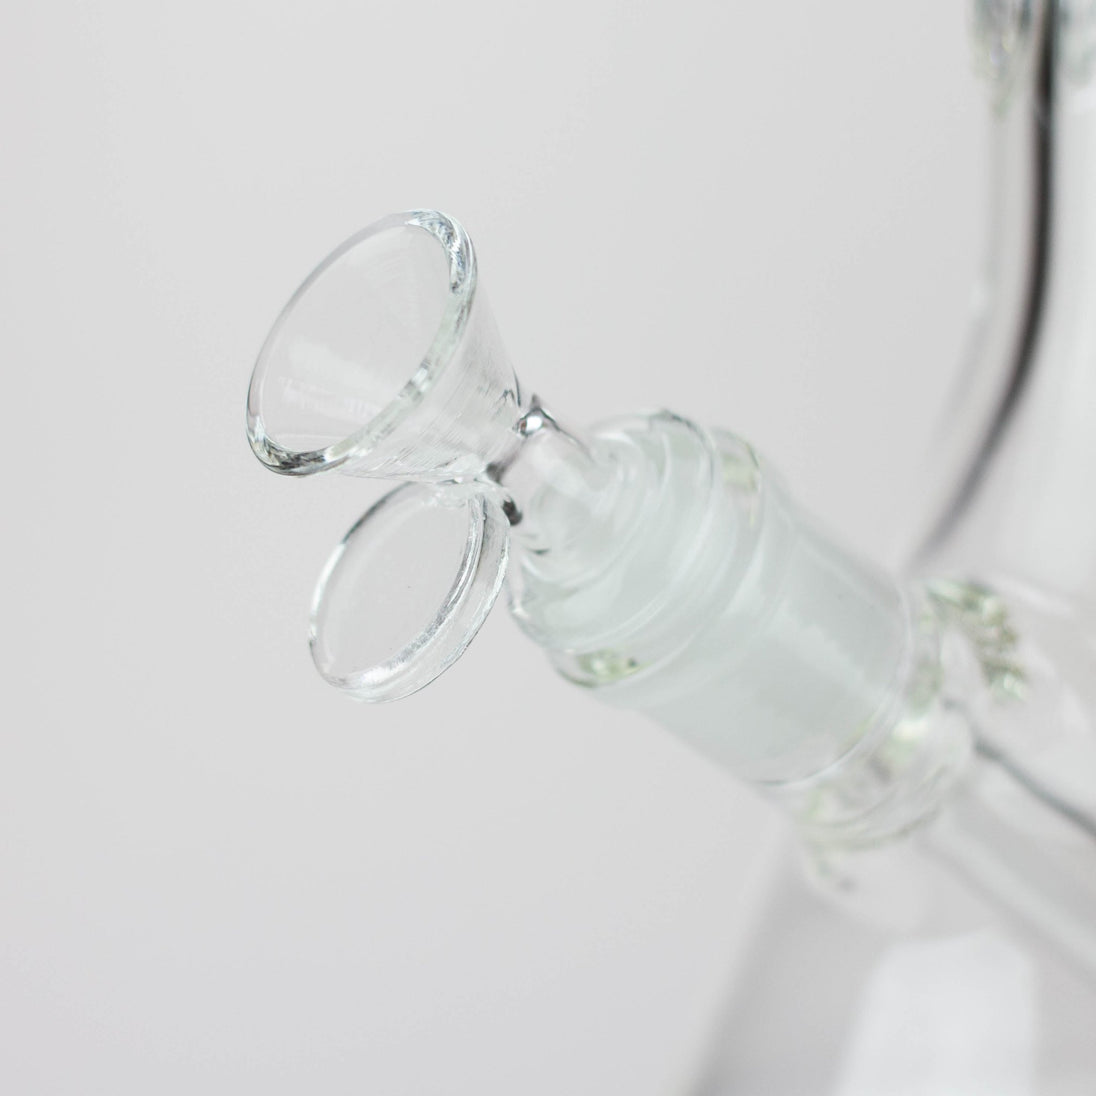 WellCann | 14" 7mm Beaker Bong - Glasss Station